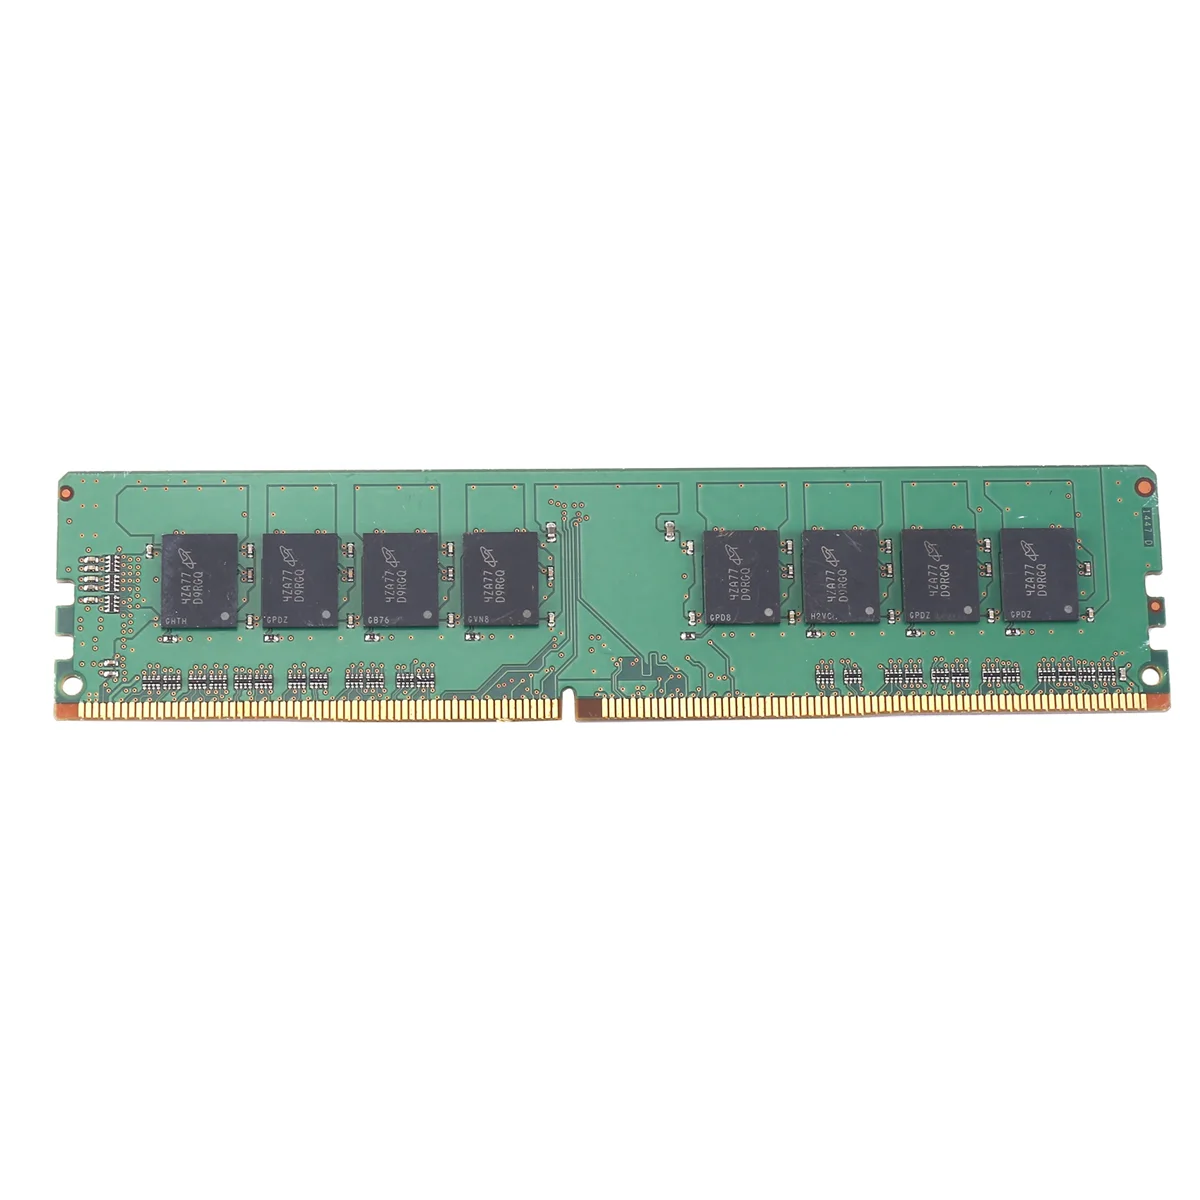 

DDR4 RAM Memory 8GB 2133Mhz Desktop Memory 288 Pin DIMM RAM PC4 17000 RAM Memory for